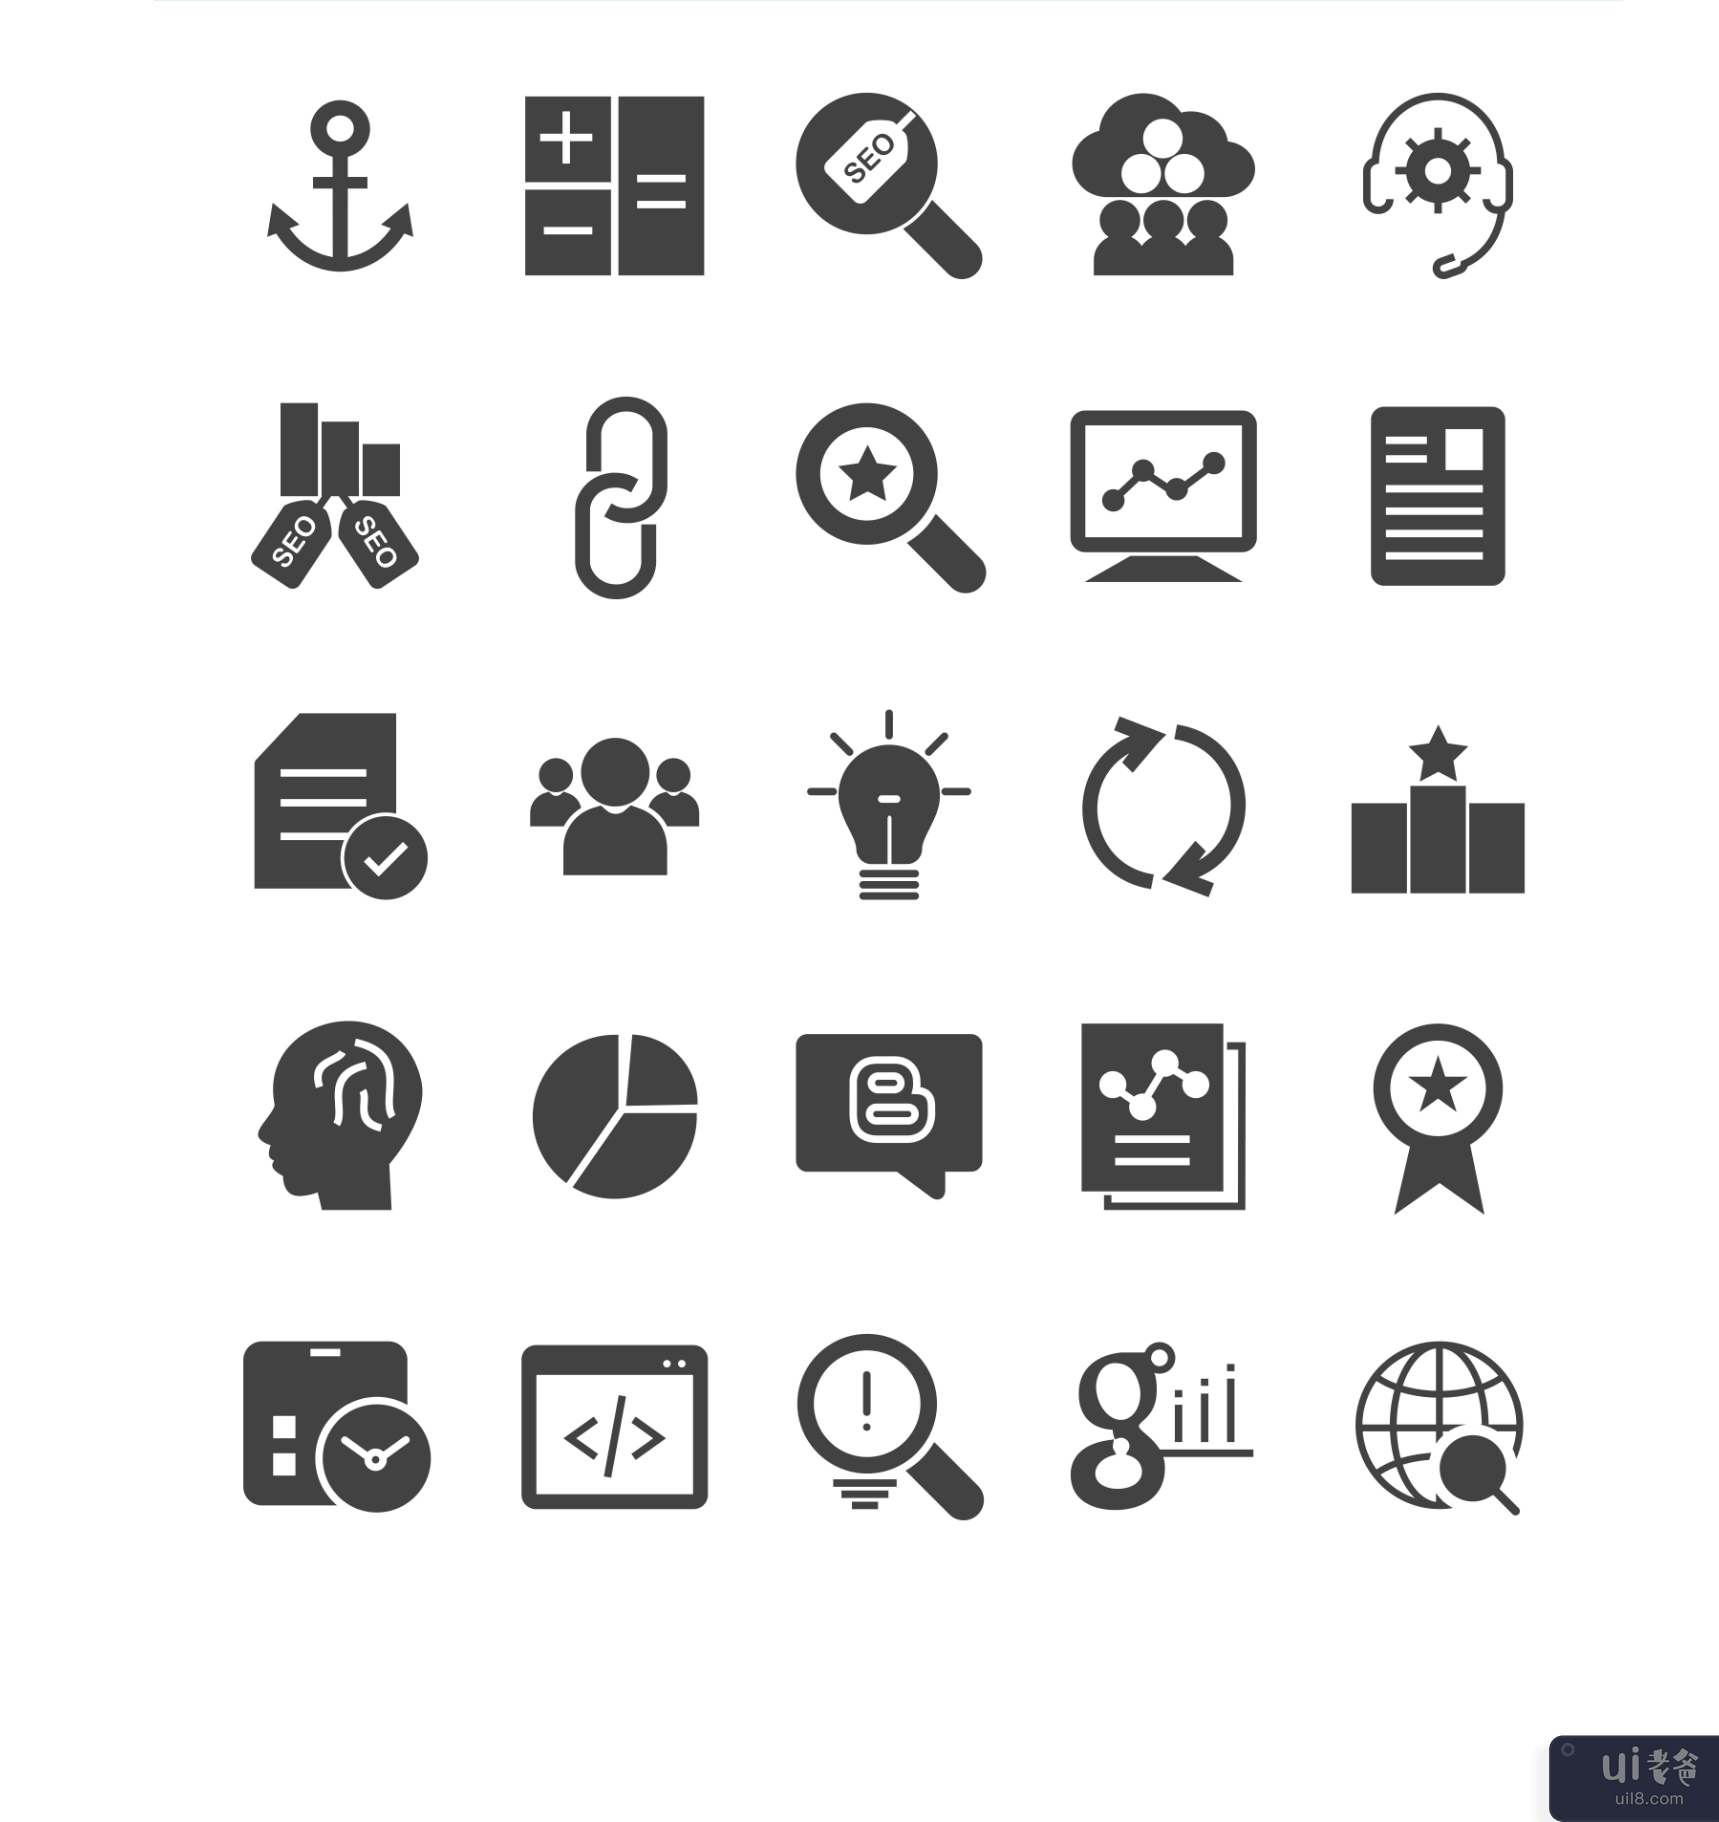 搜索引擎优化图标(SEO Icons)插图1